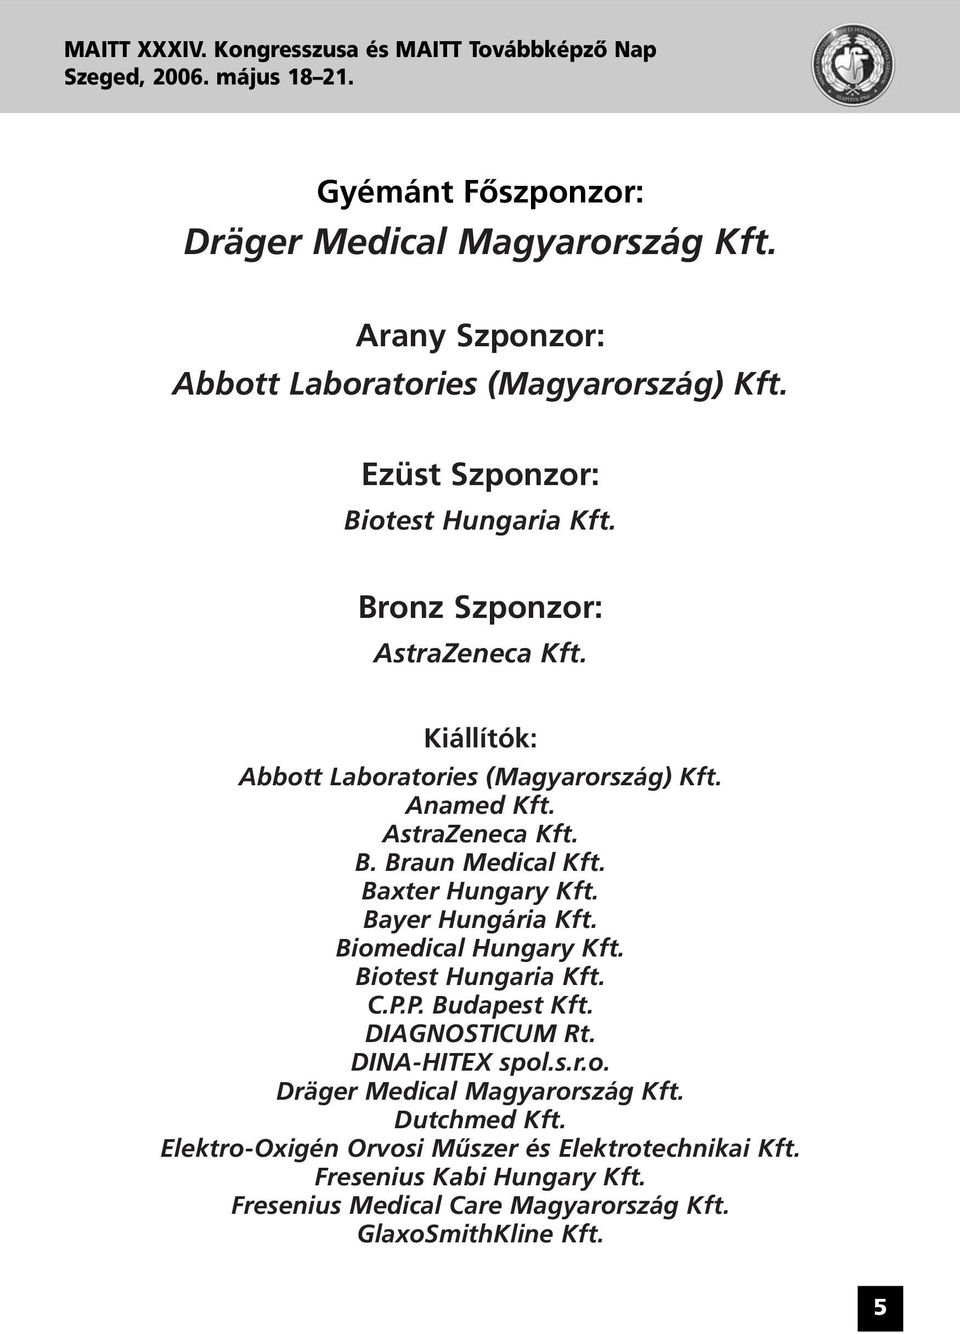 Baxter Hungary Kft. Bayer Hungária Kft. Biomedical Hungary Kft. Biotest Hungaria Kft. C.P.P. Budapest Kft. DIAGNOSTICUM Rt. DINA-HITEX spol.s.r.o. Dräger Medical Magyarország Kft.